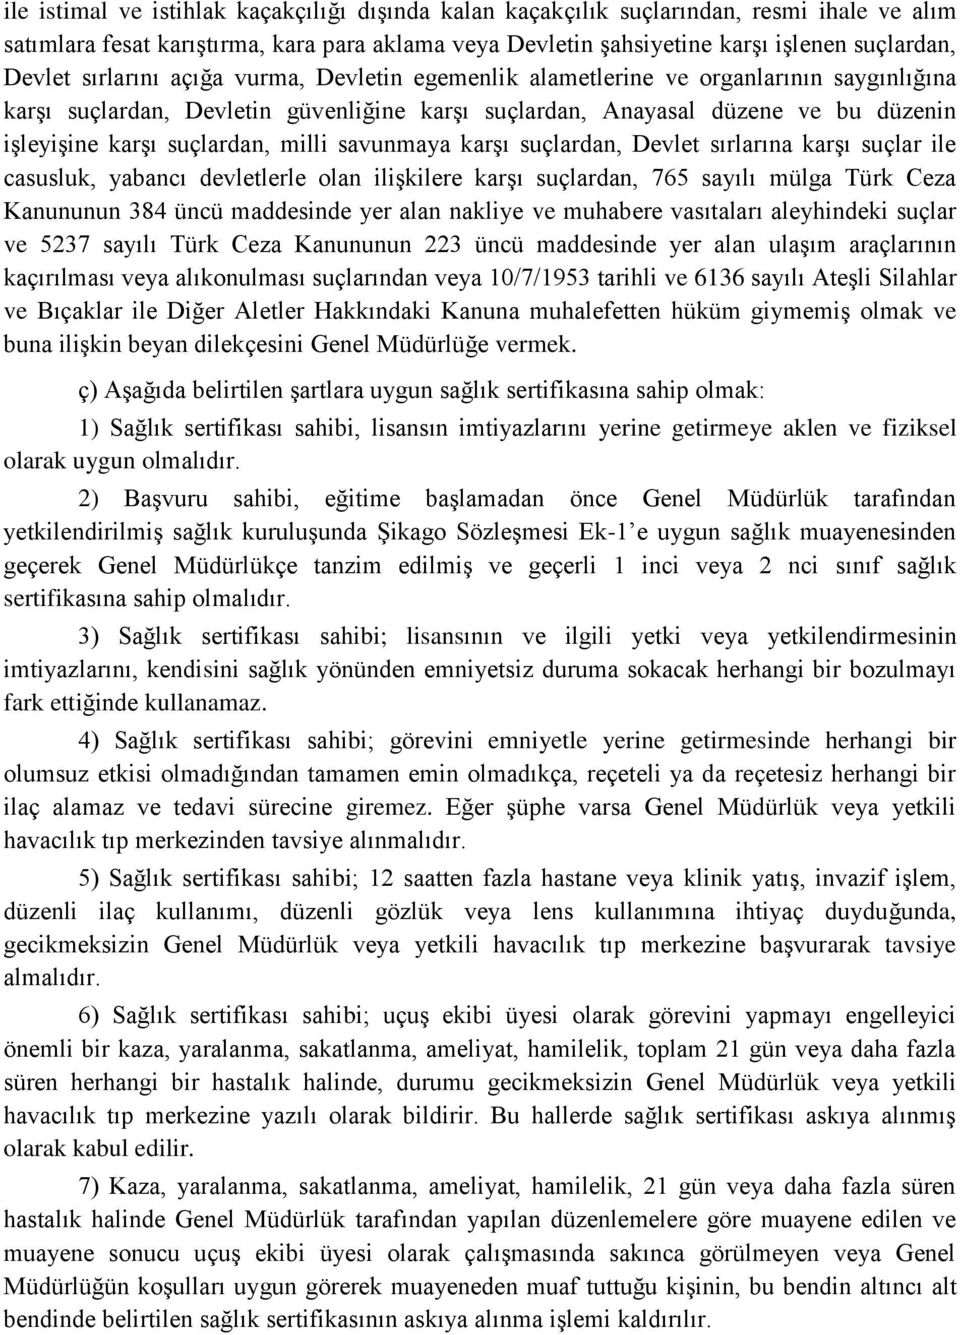 milli savunmaya karşı suçlardan, Devlet sırlarına karşı suçlar ile casusluk, yabancı devletlerle olan ilişkilere karşı suçlardan, 765 sayılı mülga Türk Ceza Kanununun 384 üncü maddesinde yer alan